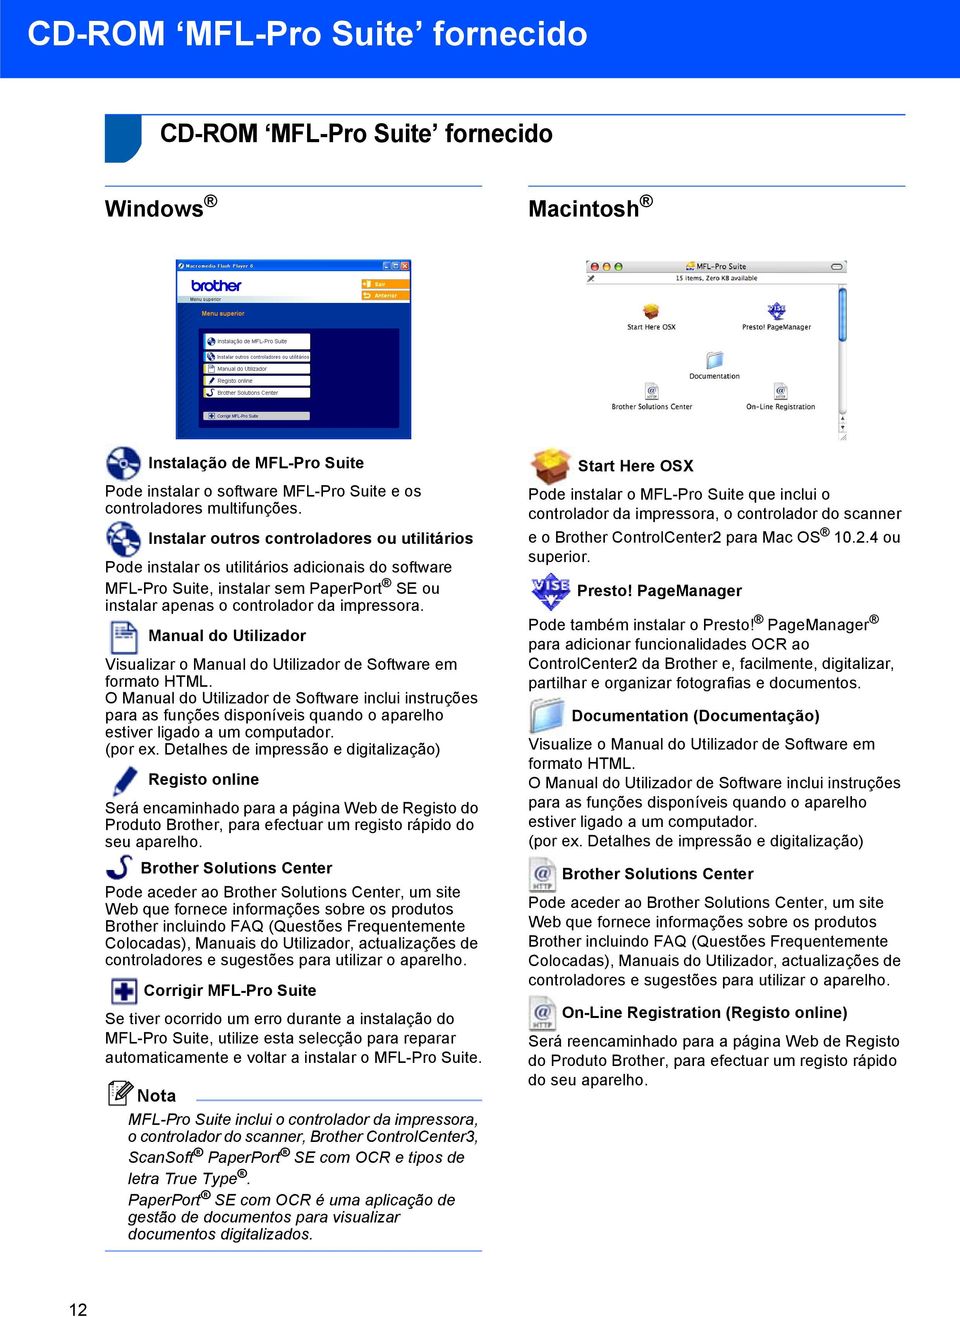 Manual do Utilizador Visualizar o Manual do Utilizador de Software em formato HTML.